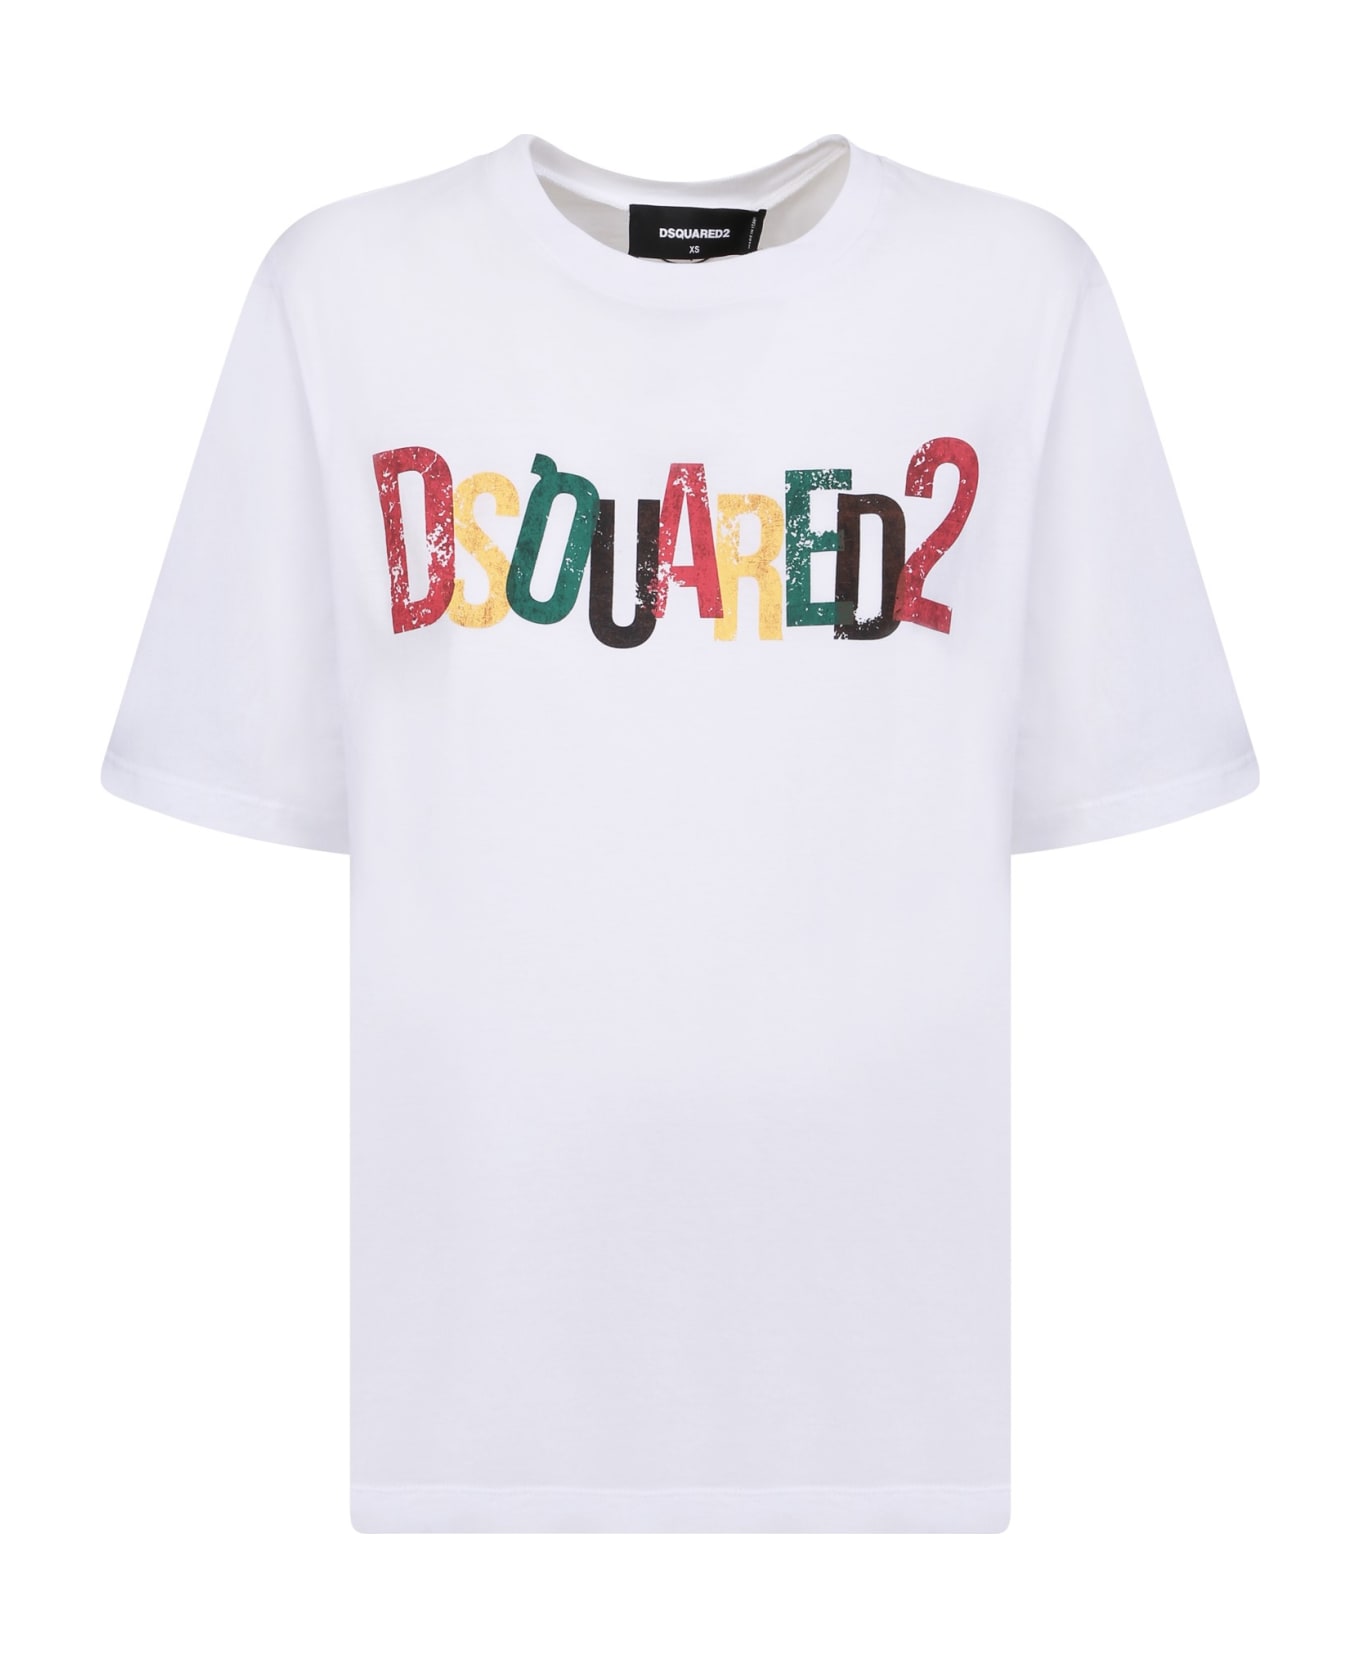 Dsquared2 White Rainbow T-shirt - White Tシャツ